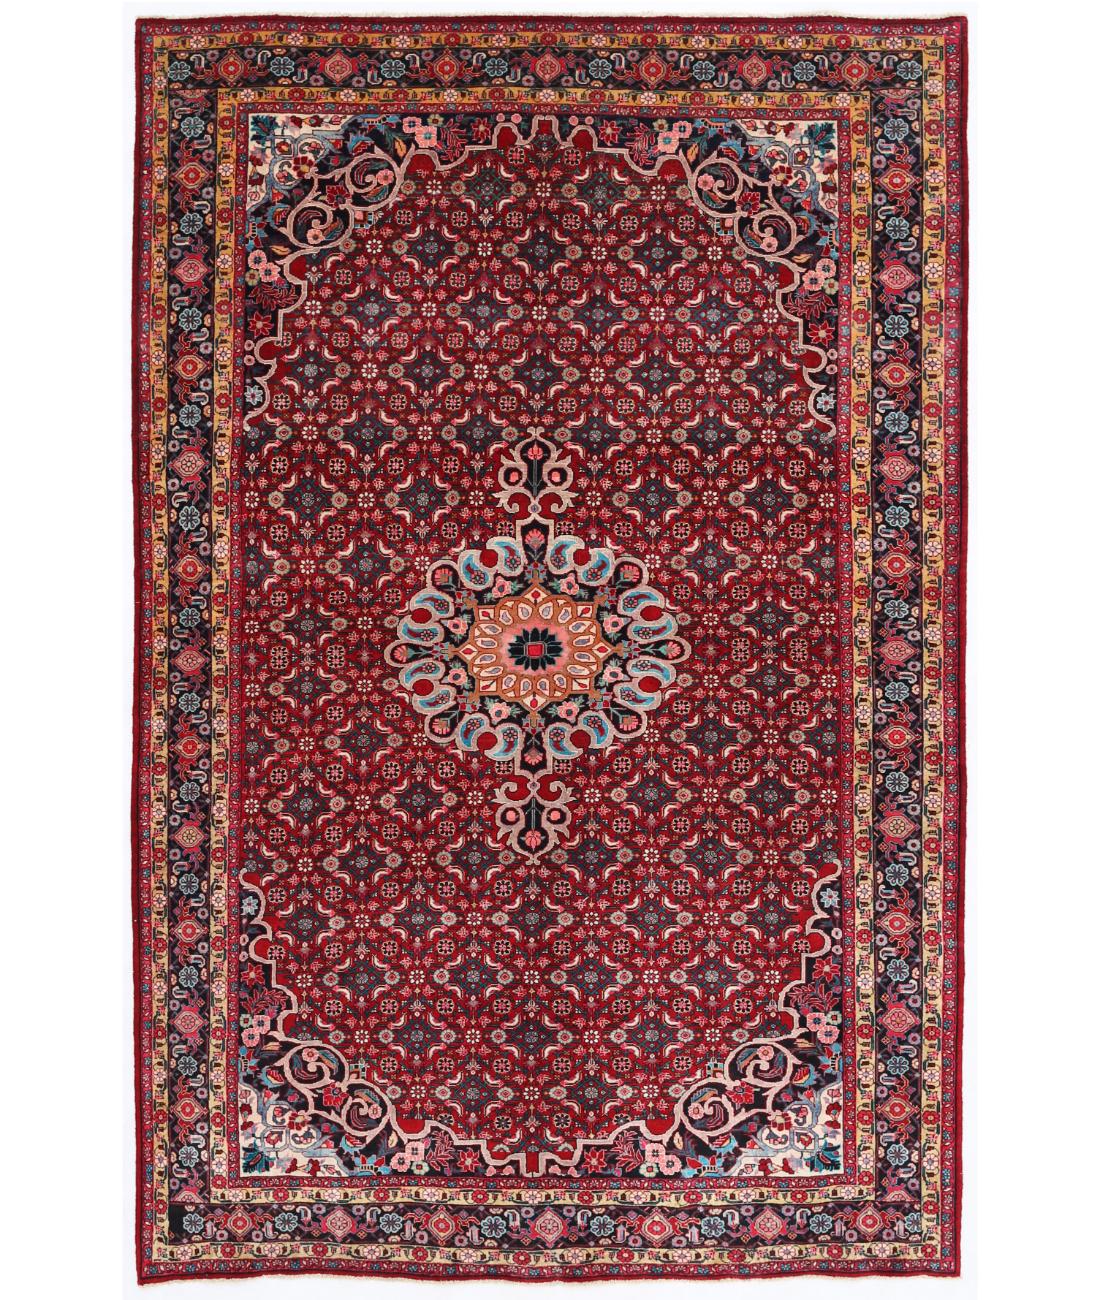 Hand Knotted Persian Bijar Wool Rug - 6'10'' x 10'5'' 6' 10" X 10' 5" ( 208 X 318 ) / Red / Black